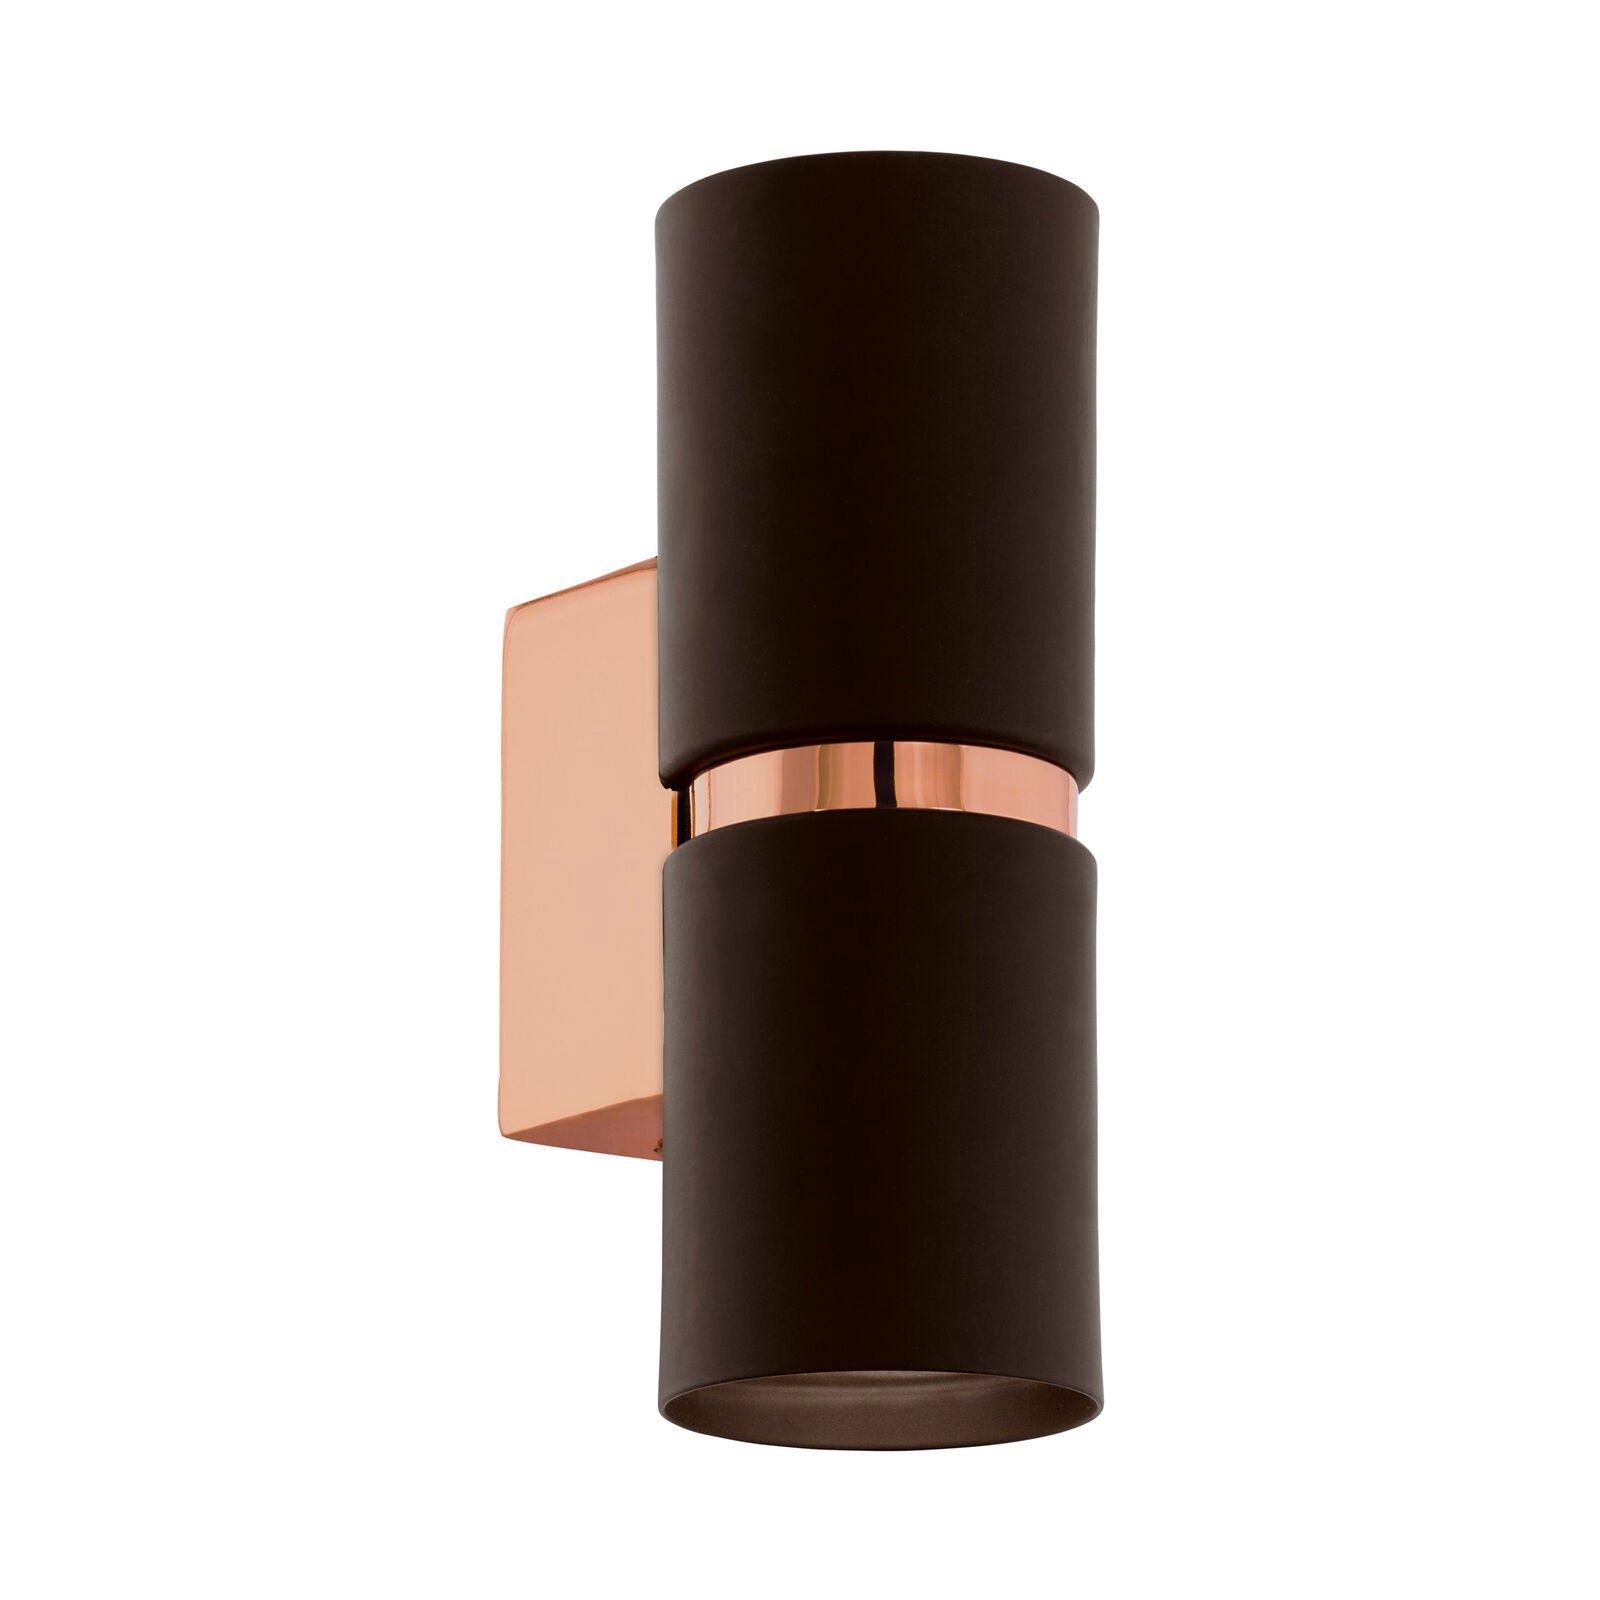 Wall Light Colour Copper Coloured Steel Brown Round Shade Bulb GU10 2x3.3W